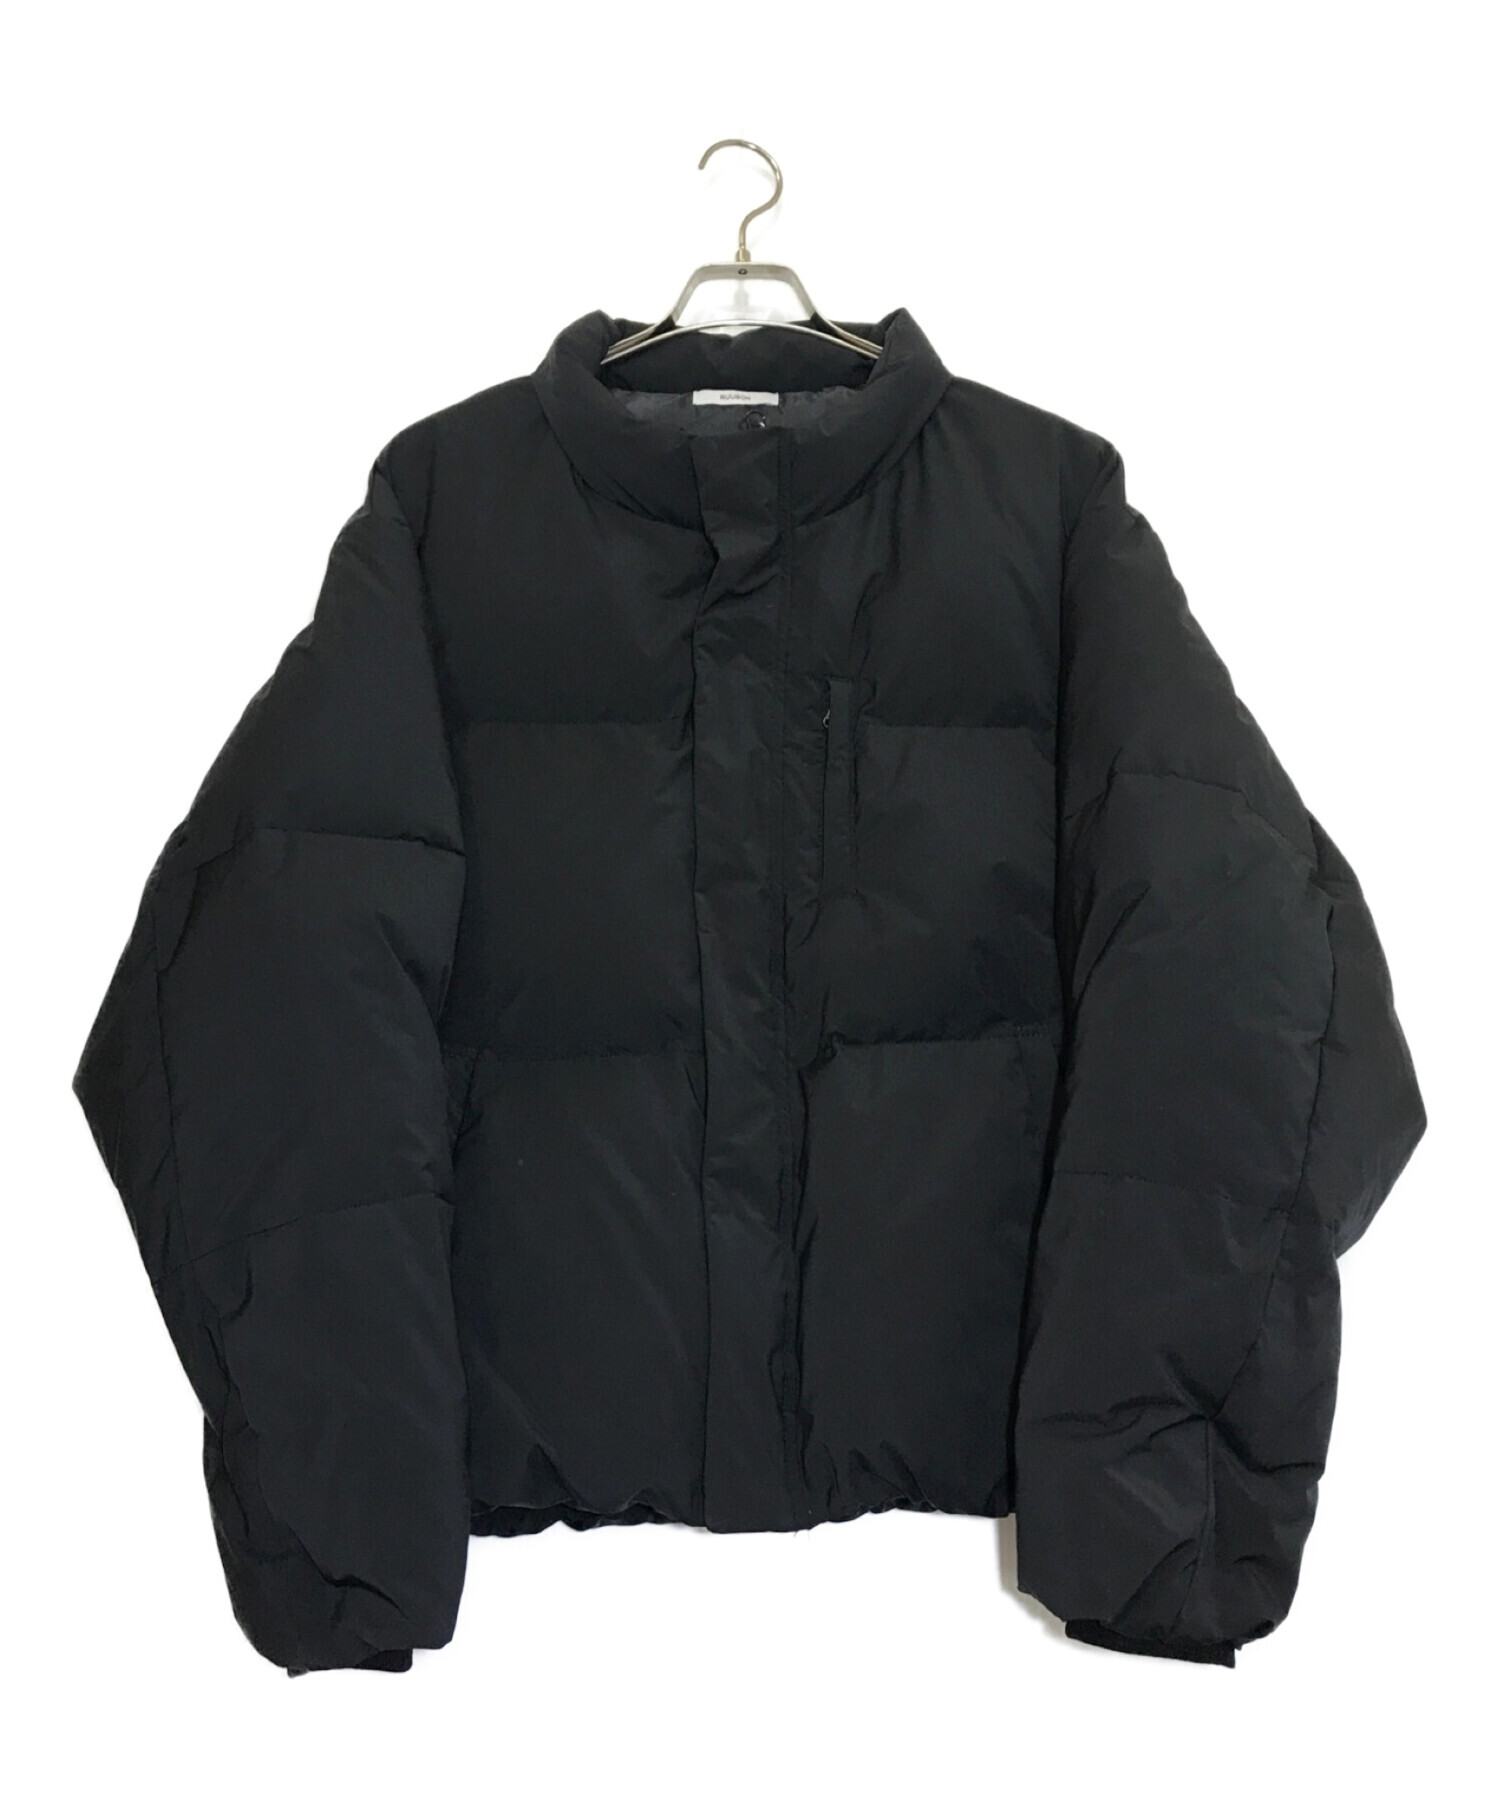 RUUBON (ルーボン) padded volume ecodown jacket ブラック サイズ:M